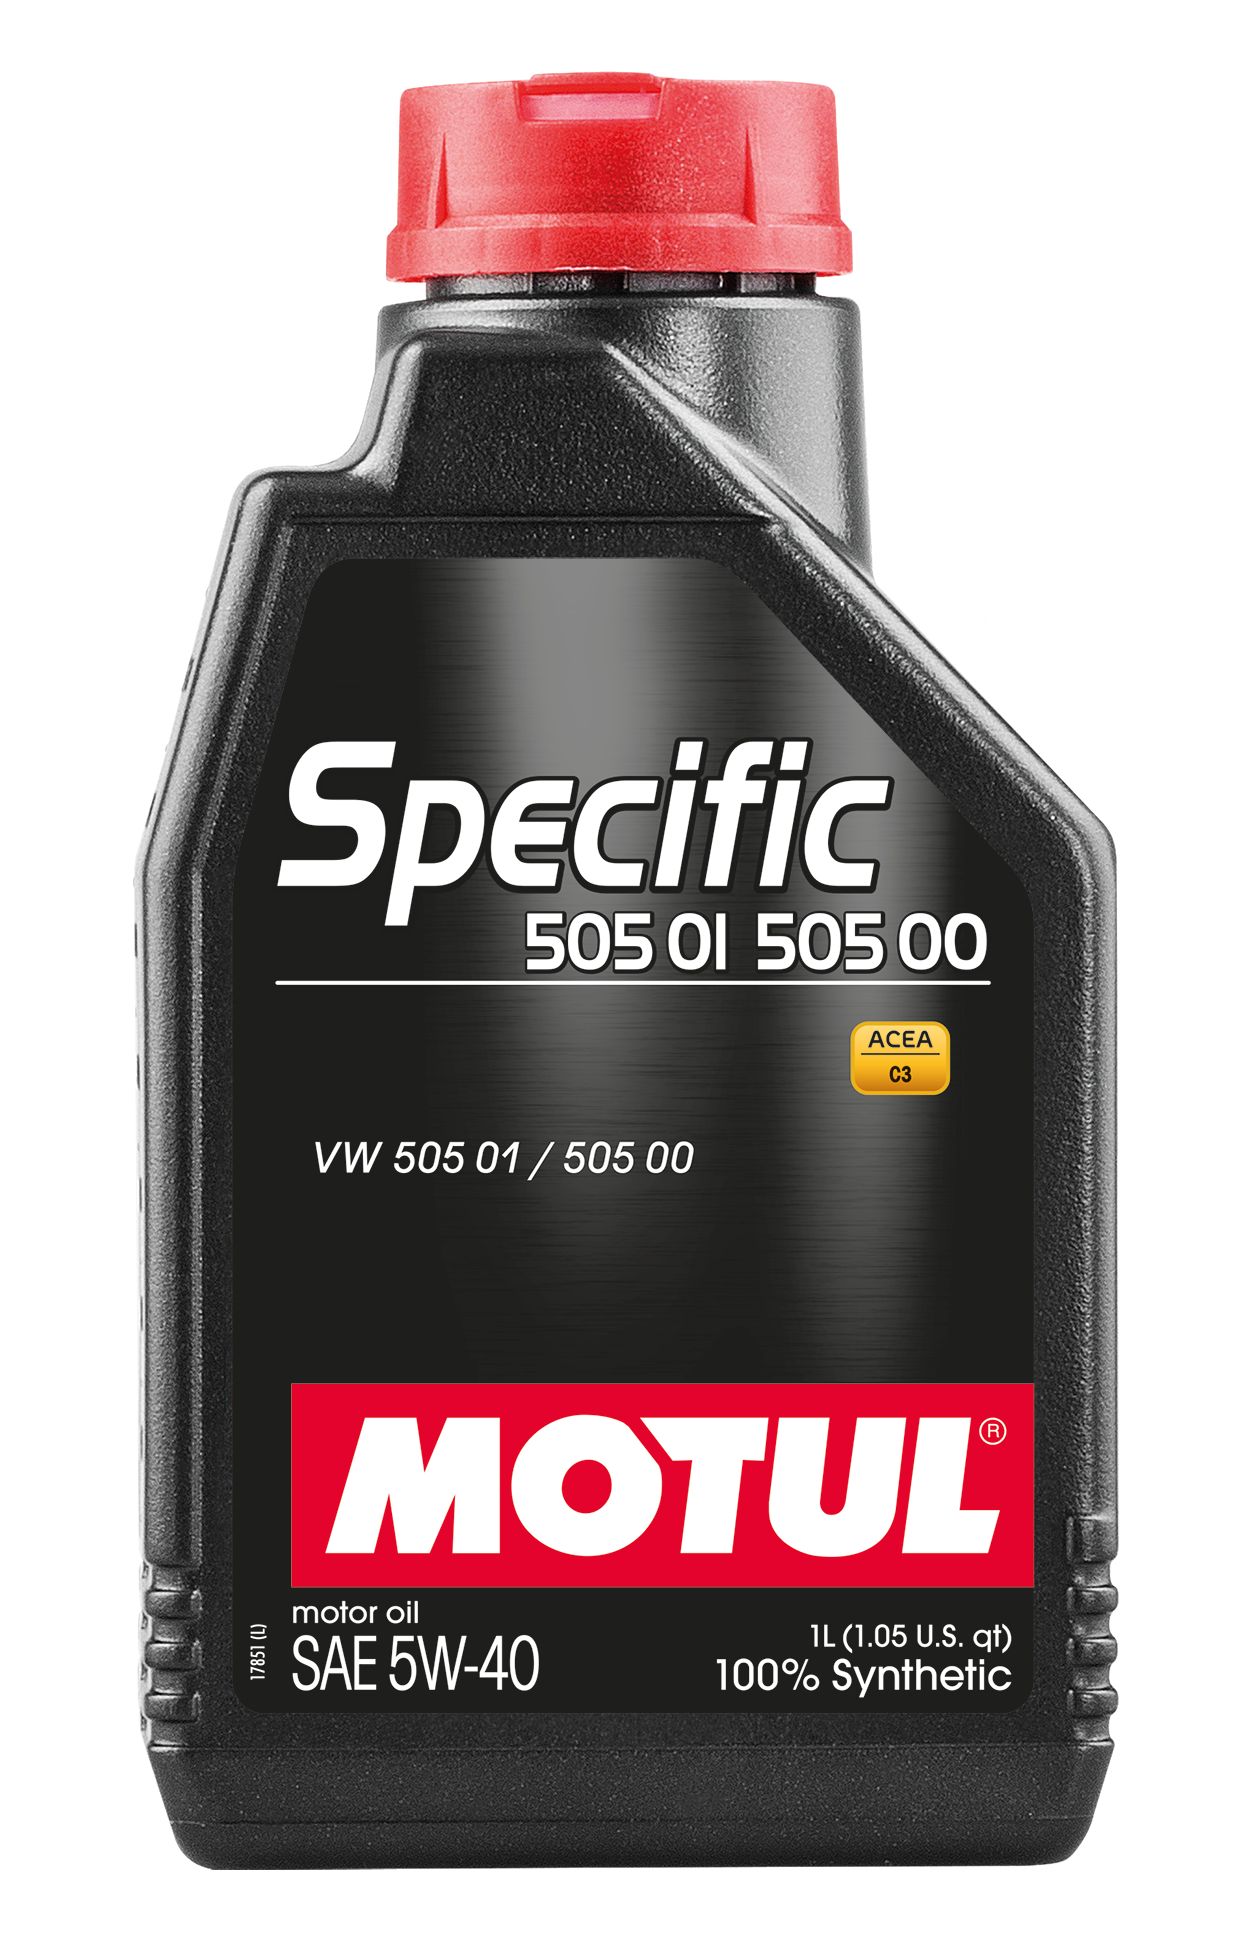  Купить Синтетическое моторное масло Motul SPECIFIC 505 01 - 502 00, 5W-40, 1 лMOTUL 842411   